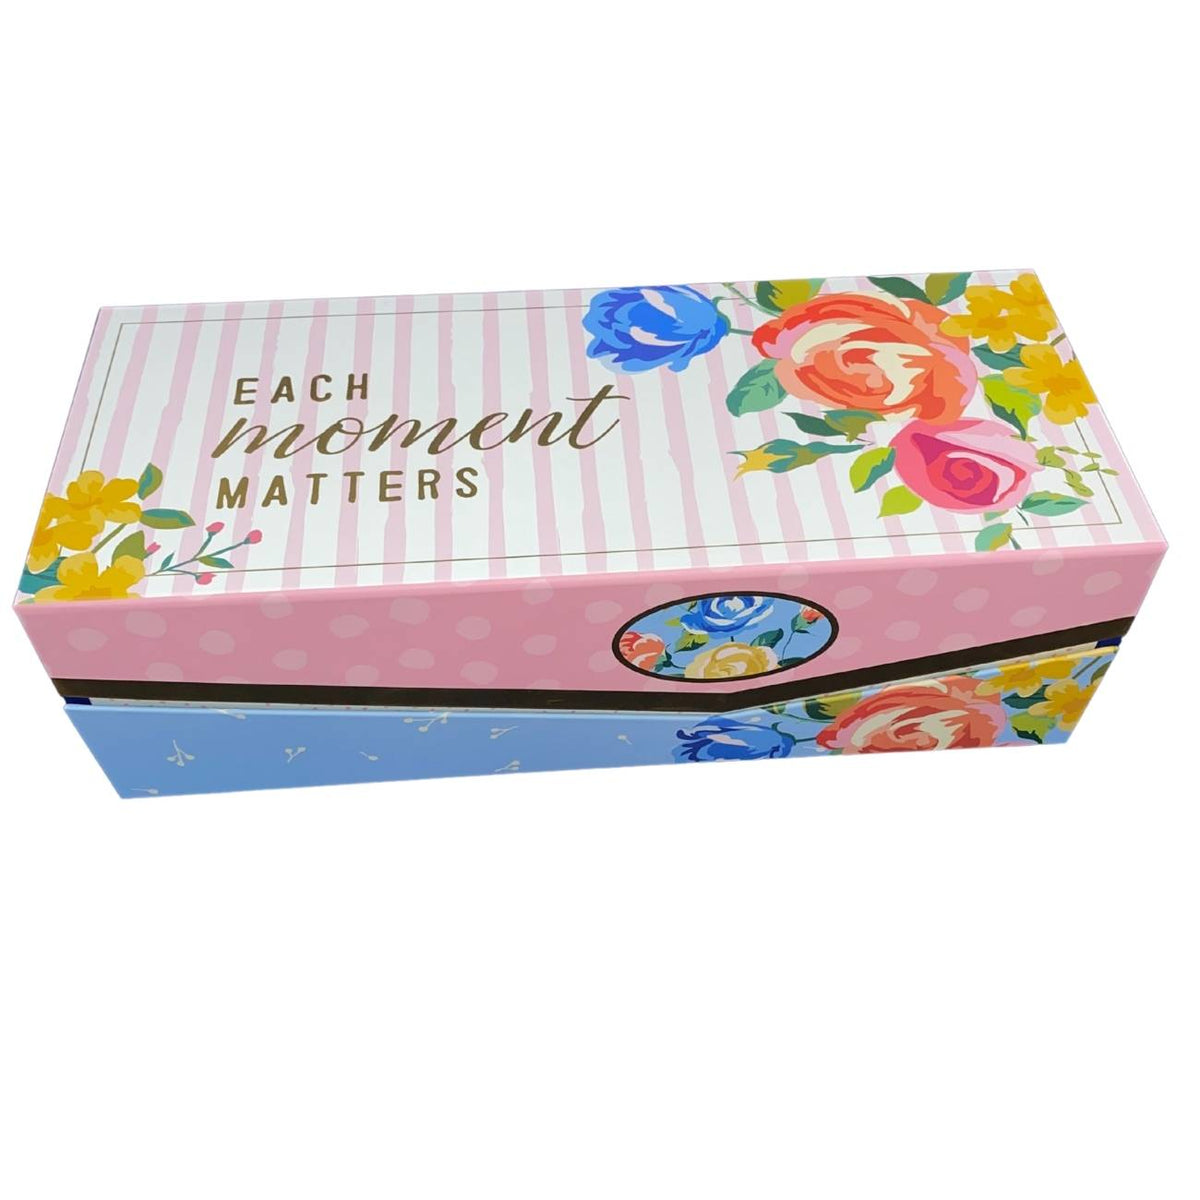 Handmade Goat Milk Soap | Nine Bar Sampler Assortment | Gift Box for Her